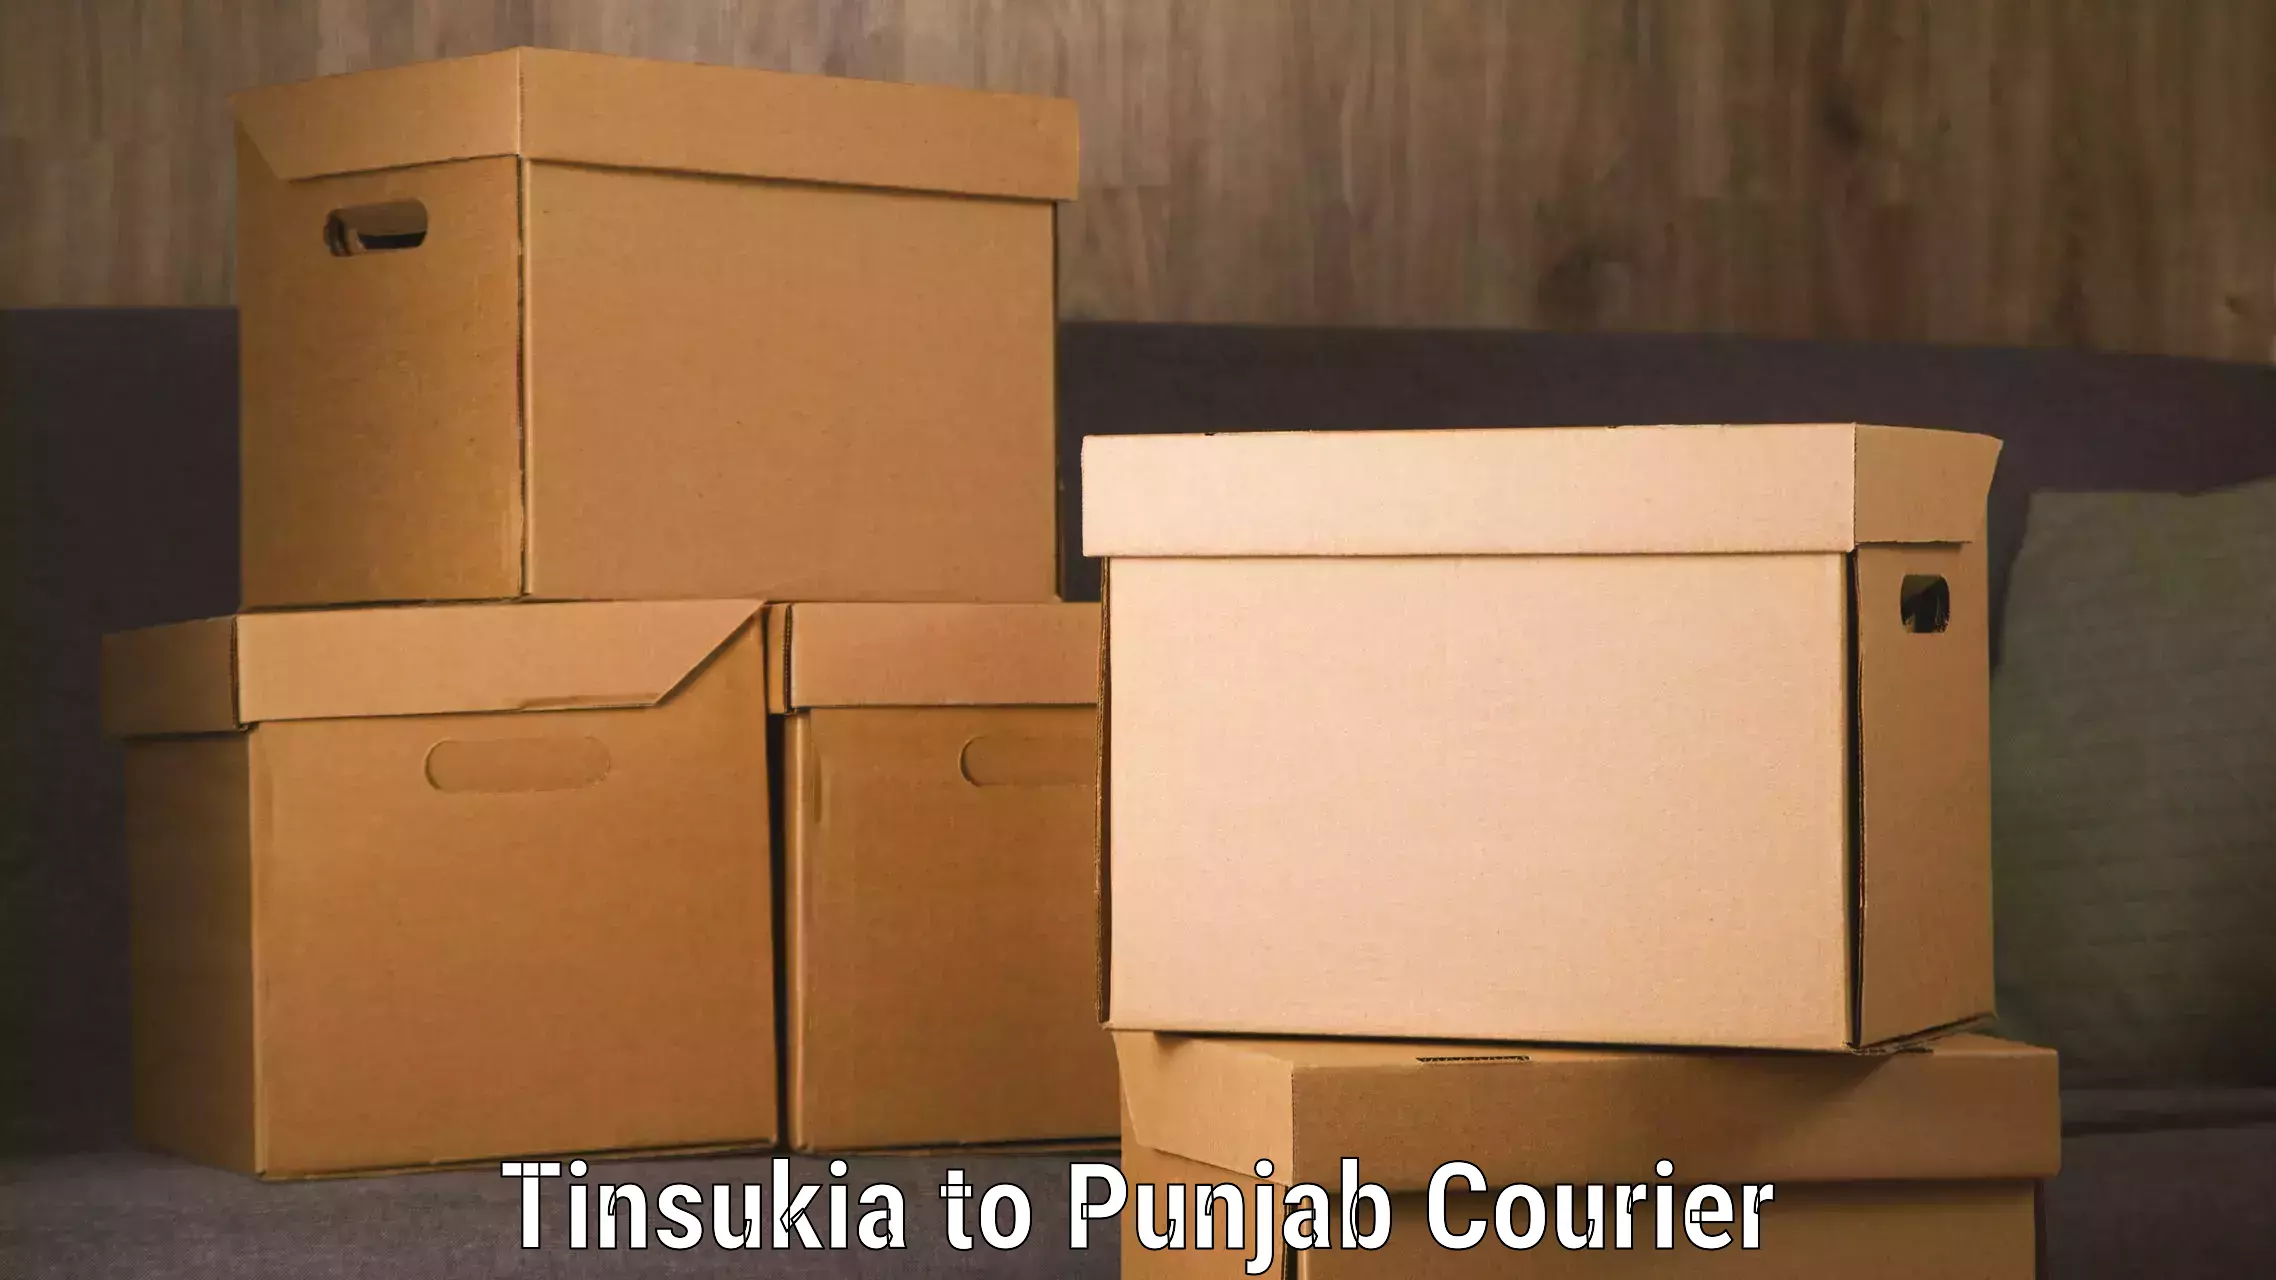 Professional baggage transport in Tinsukia to Punjab